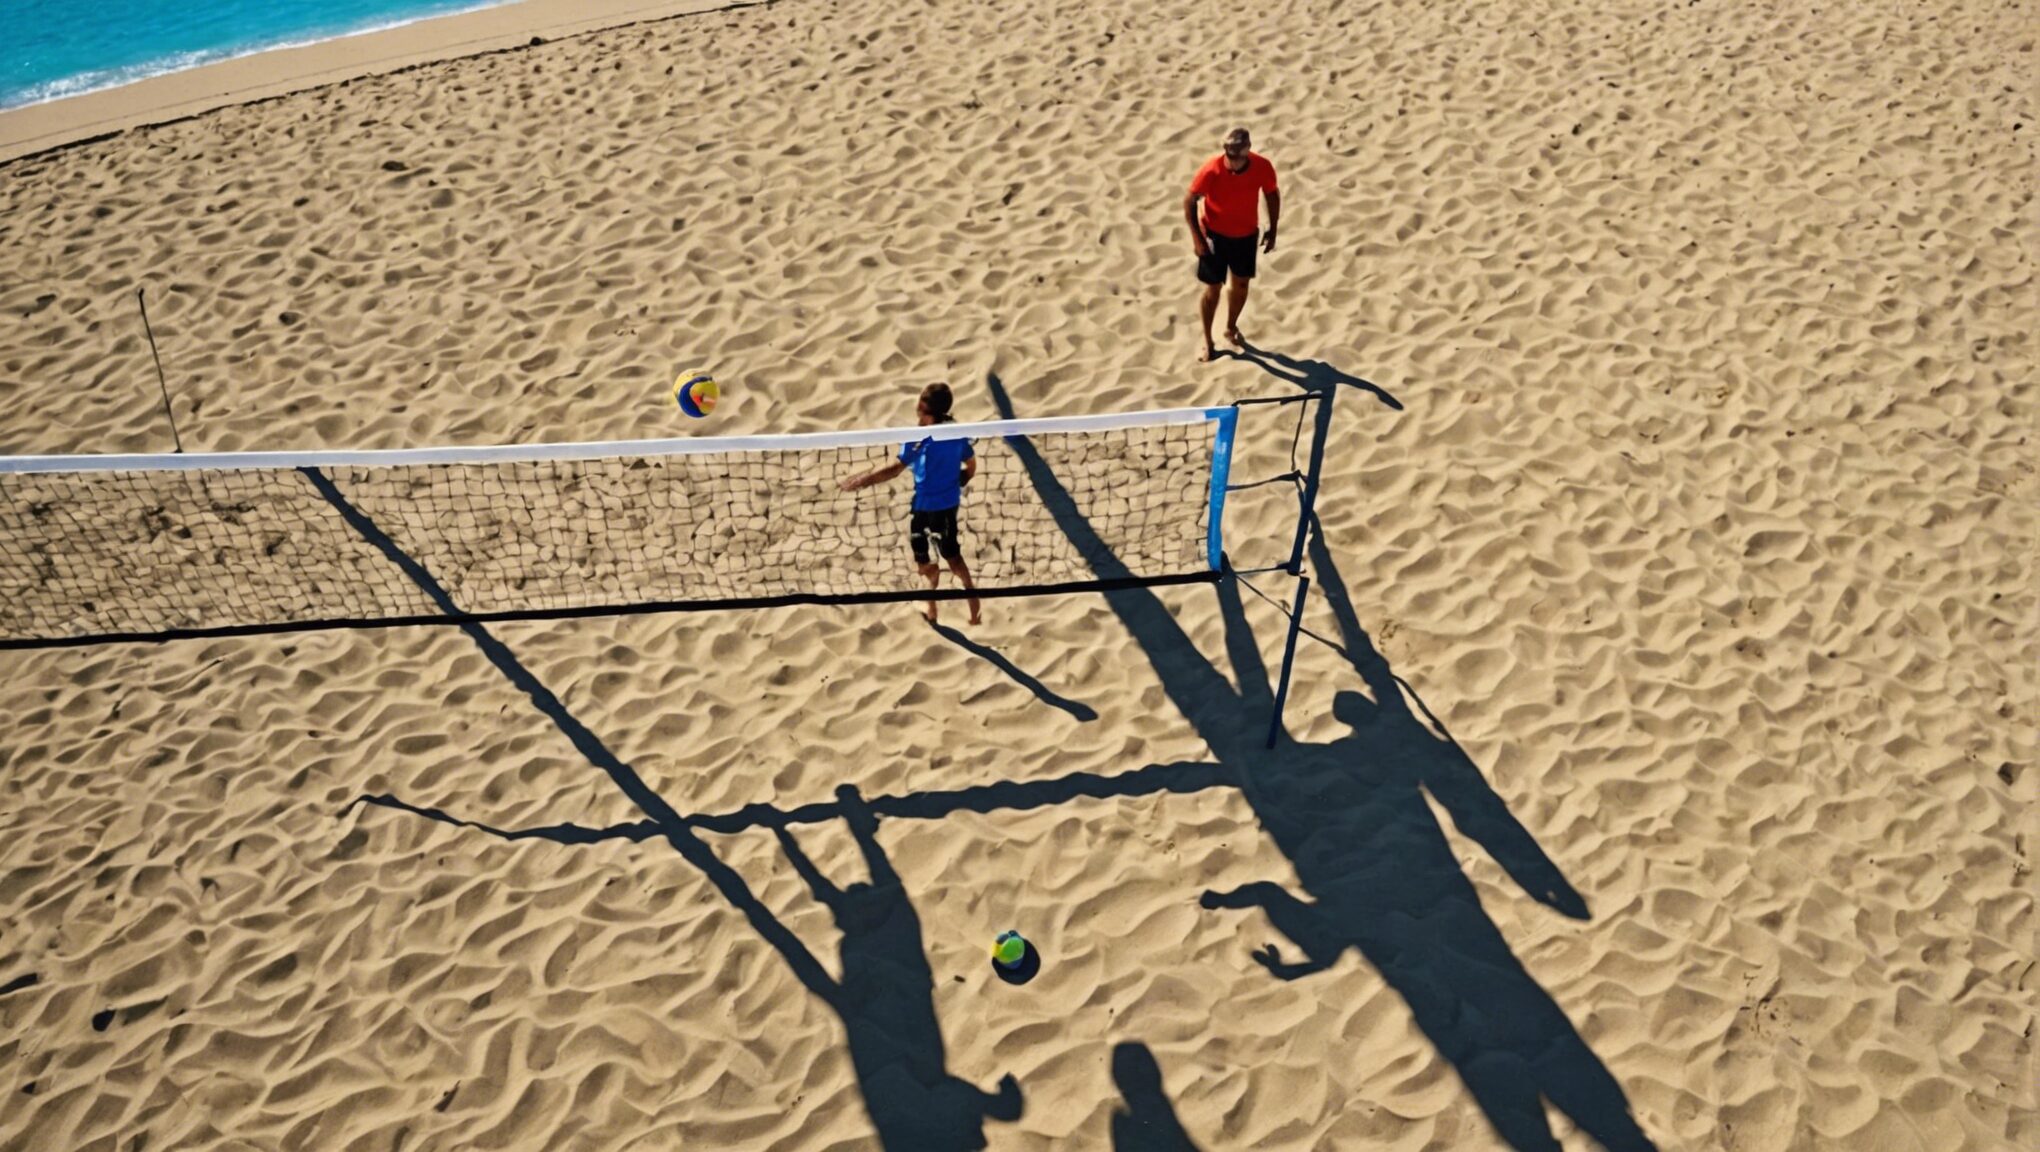 découvrez les 7 spots incontournables pour pratiquer le beach-volley en famille à montpellier ce week-end et profitez d'une journée de détente et de sport sous le soleil !